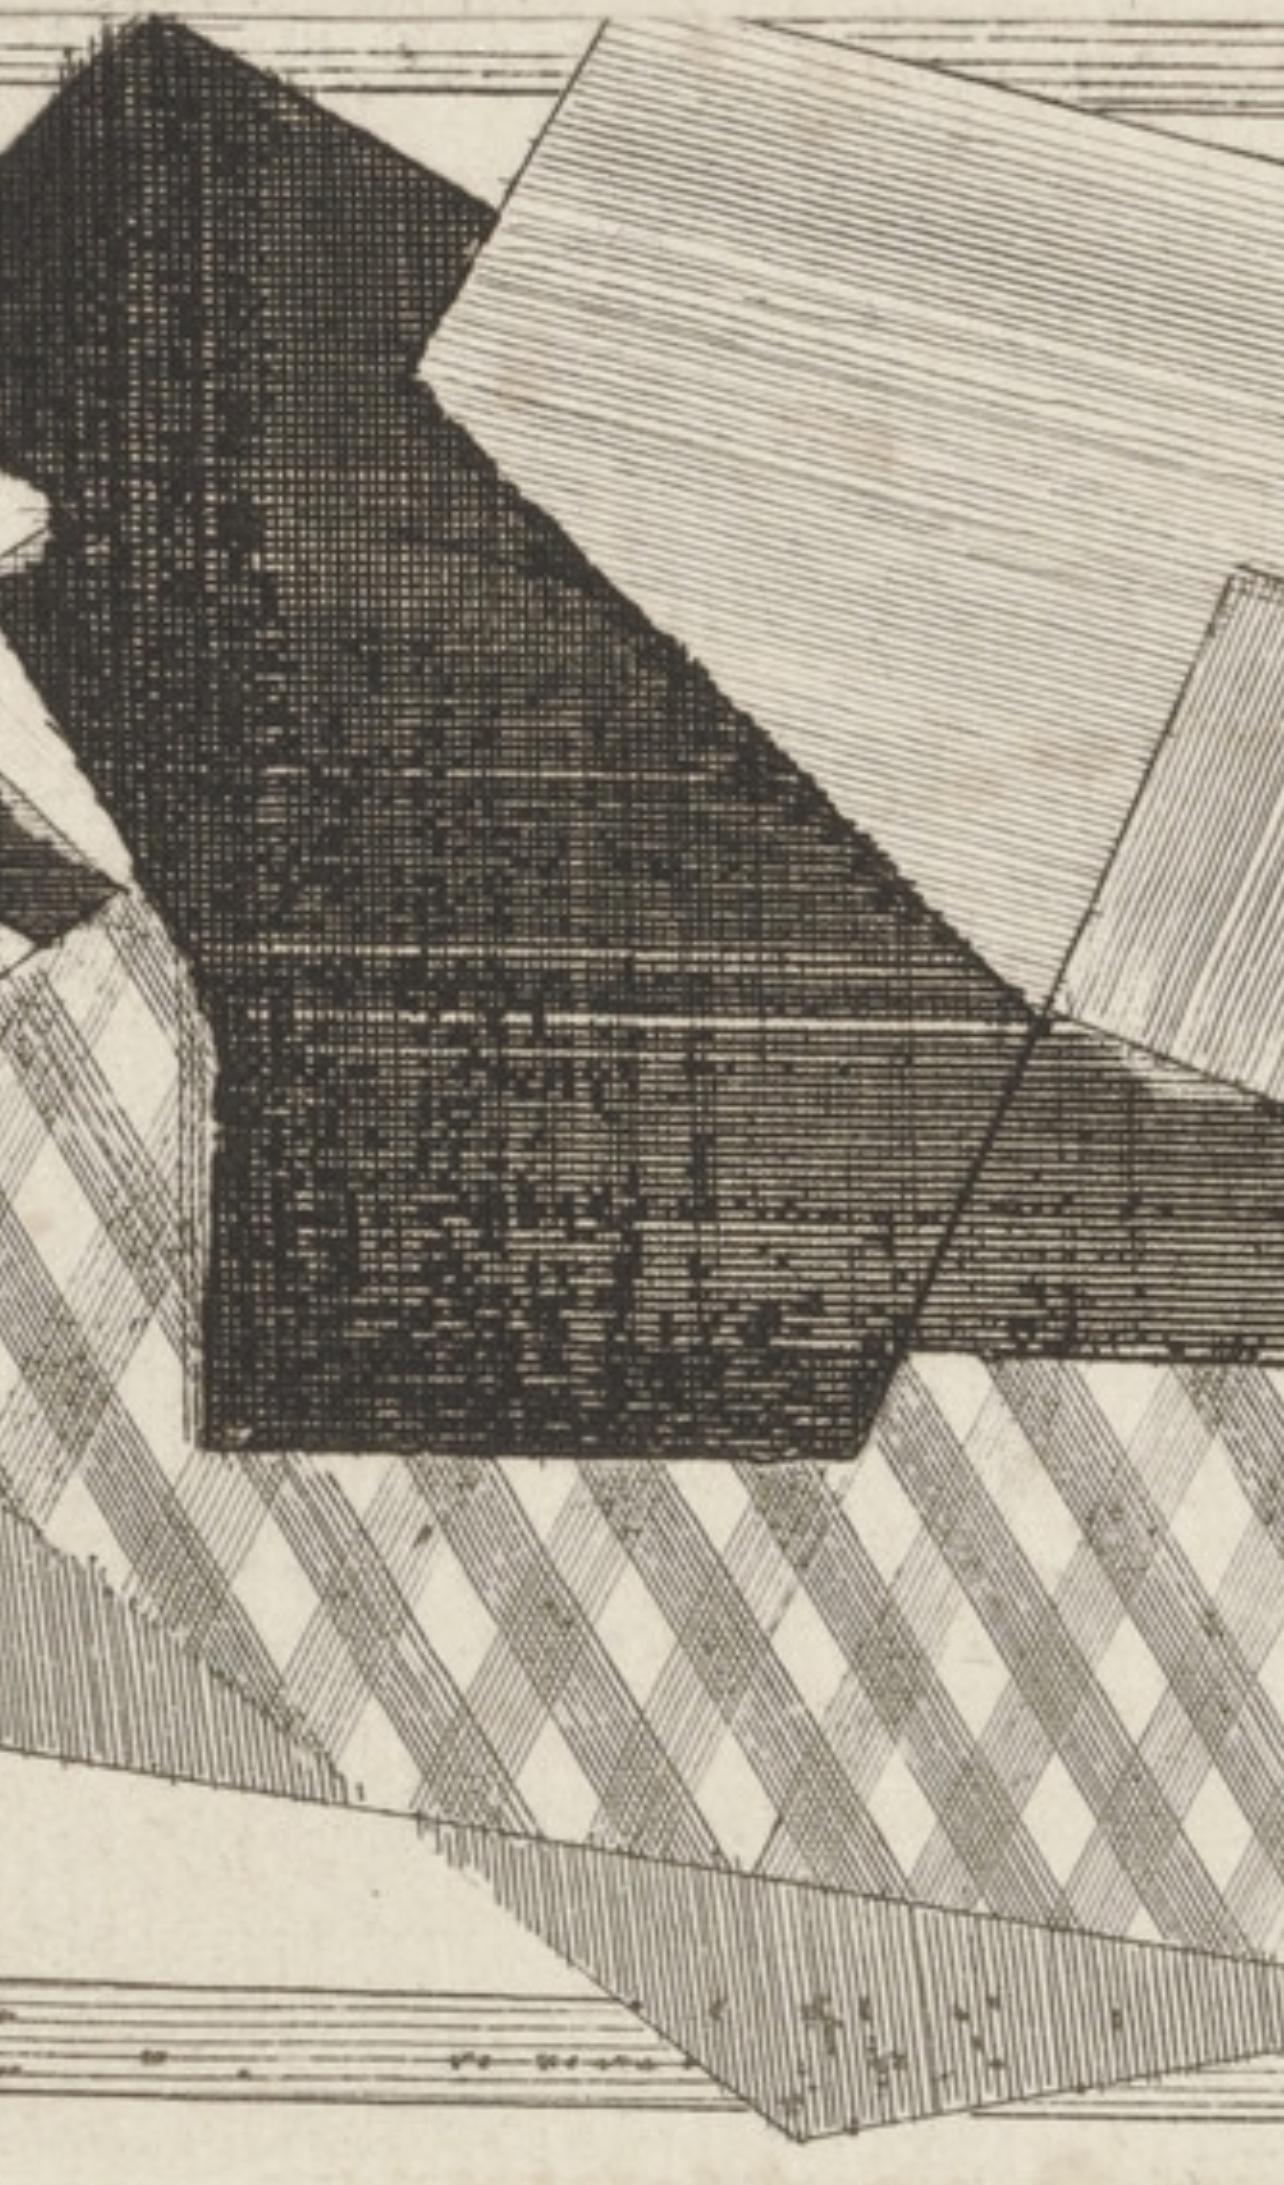 Villon, Le Cheval, Composition, Du cubisme (nach) (Moderne), Print, von Jacques Villon